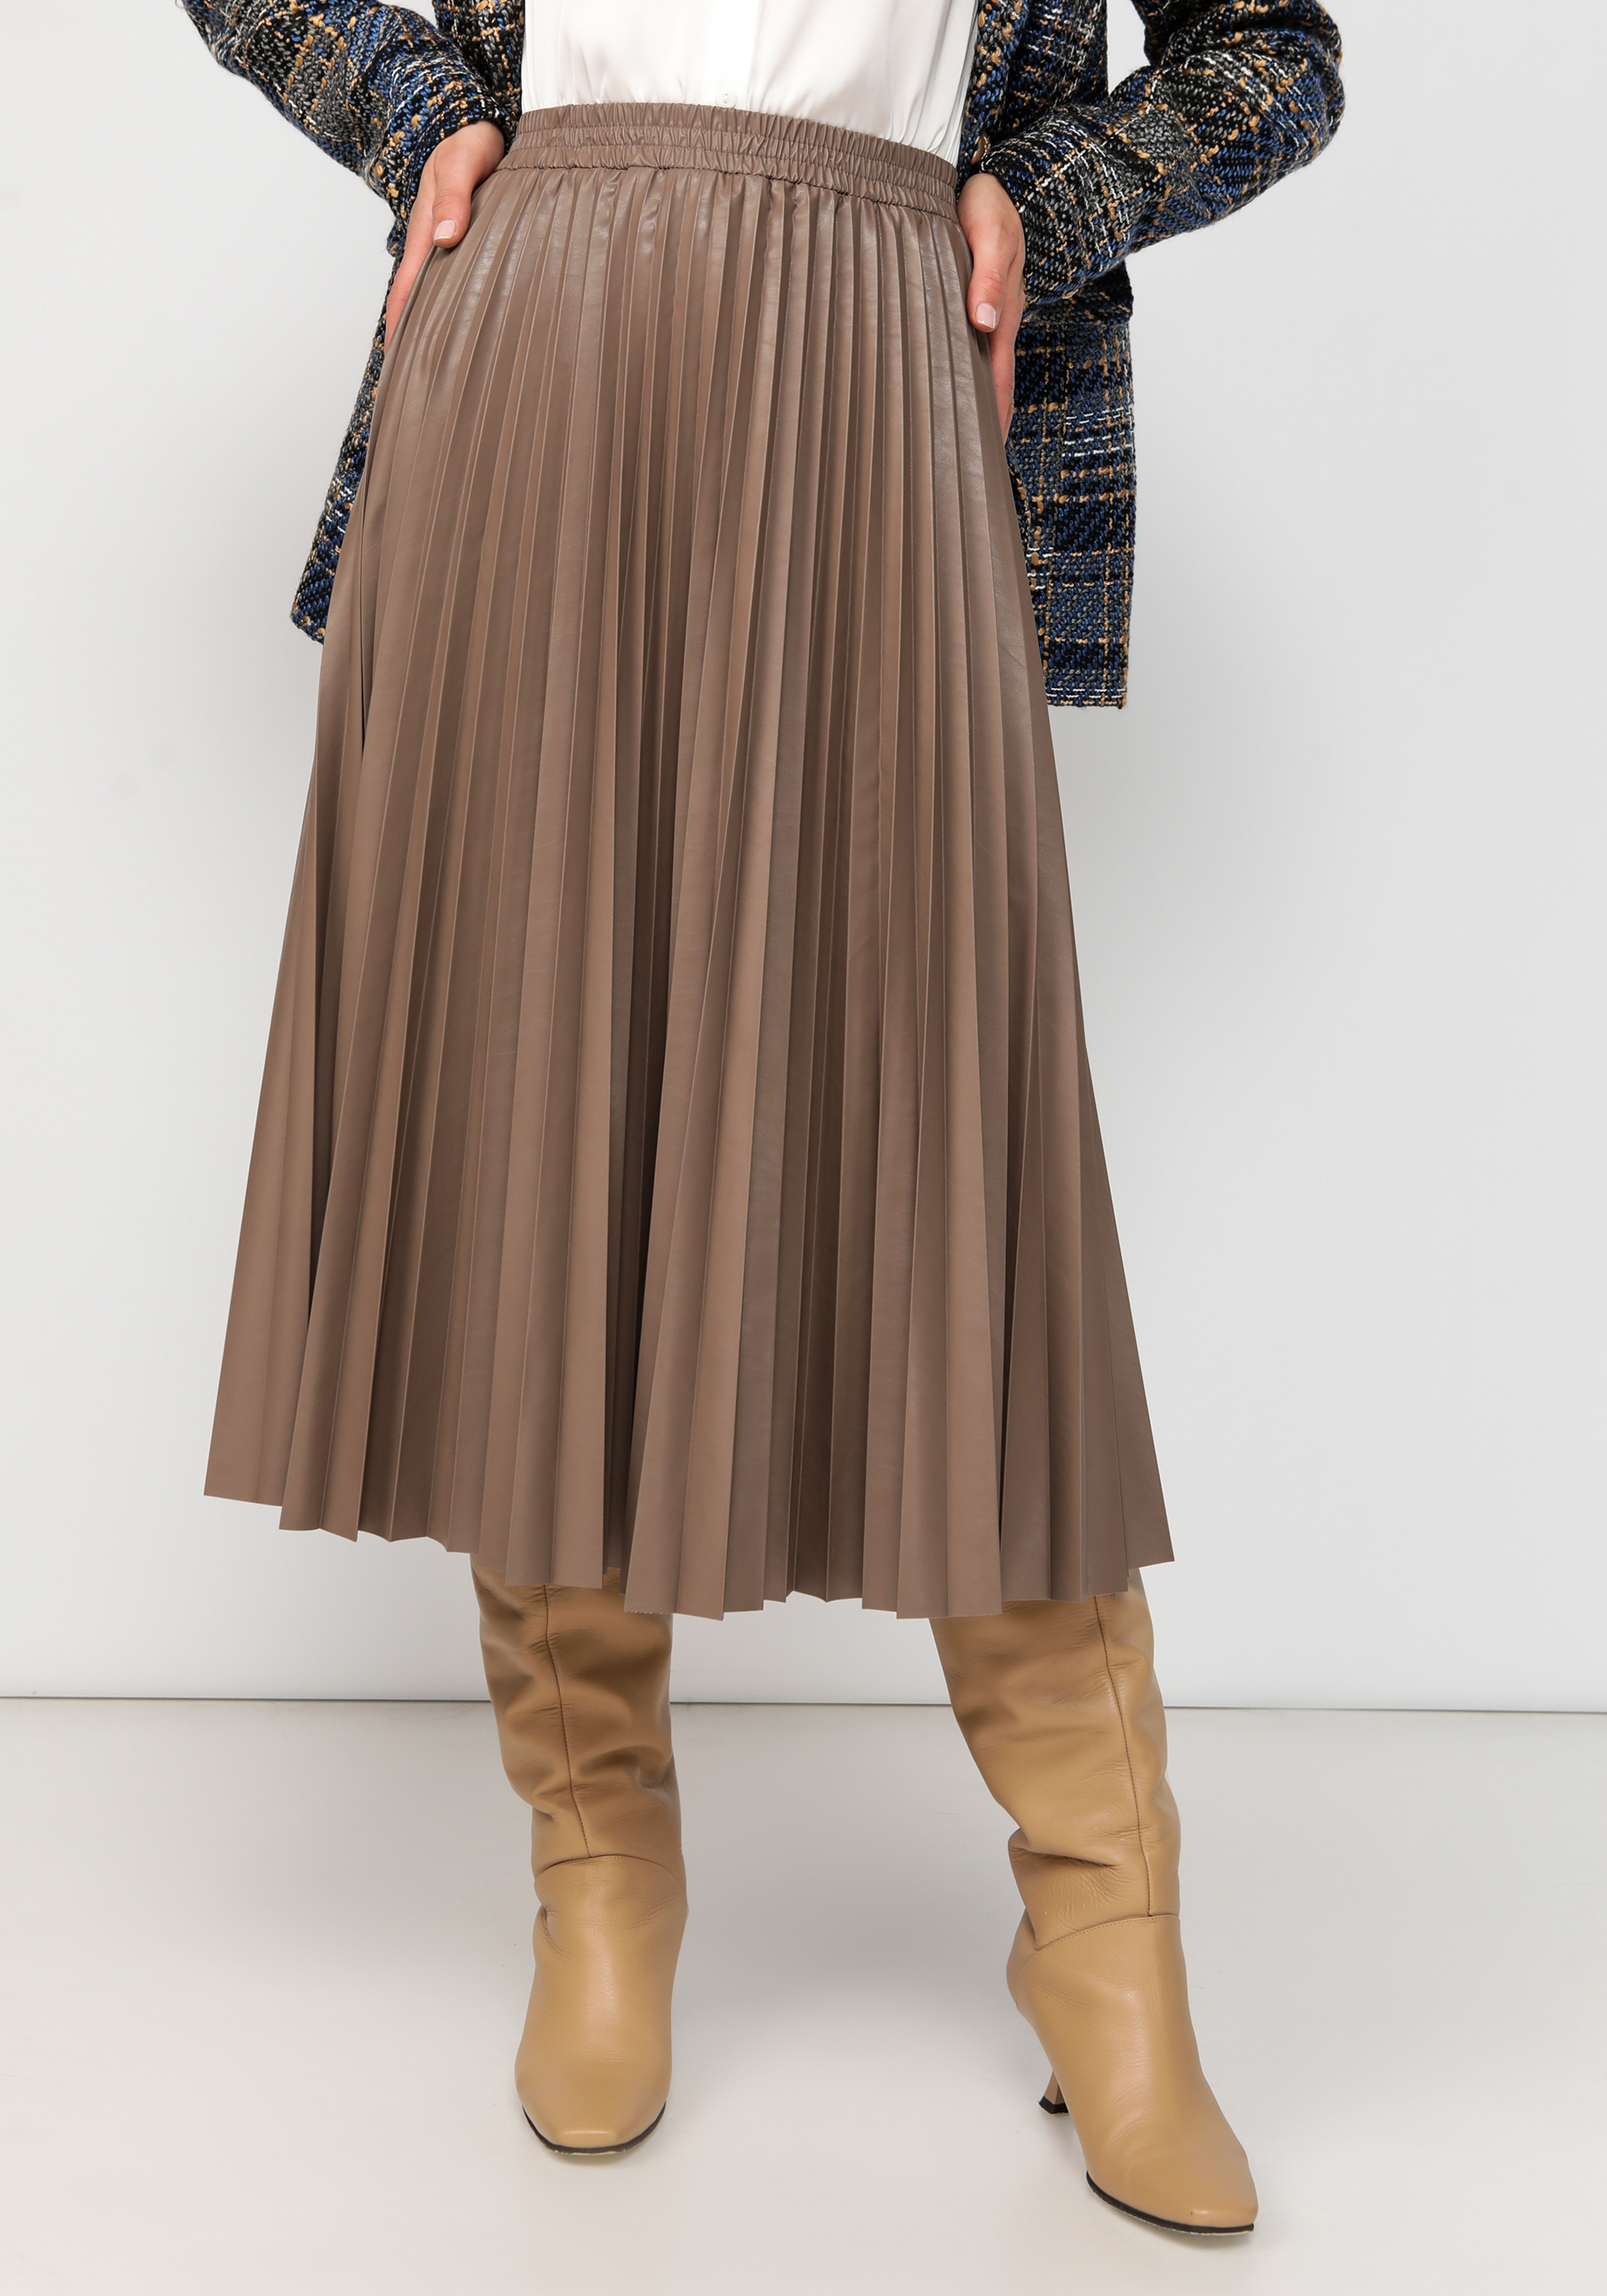 Юбка плиссированная из экокожи женский костюм жилет юбка